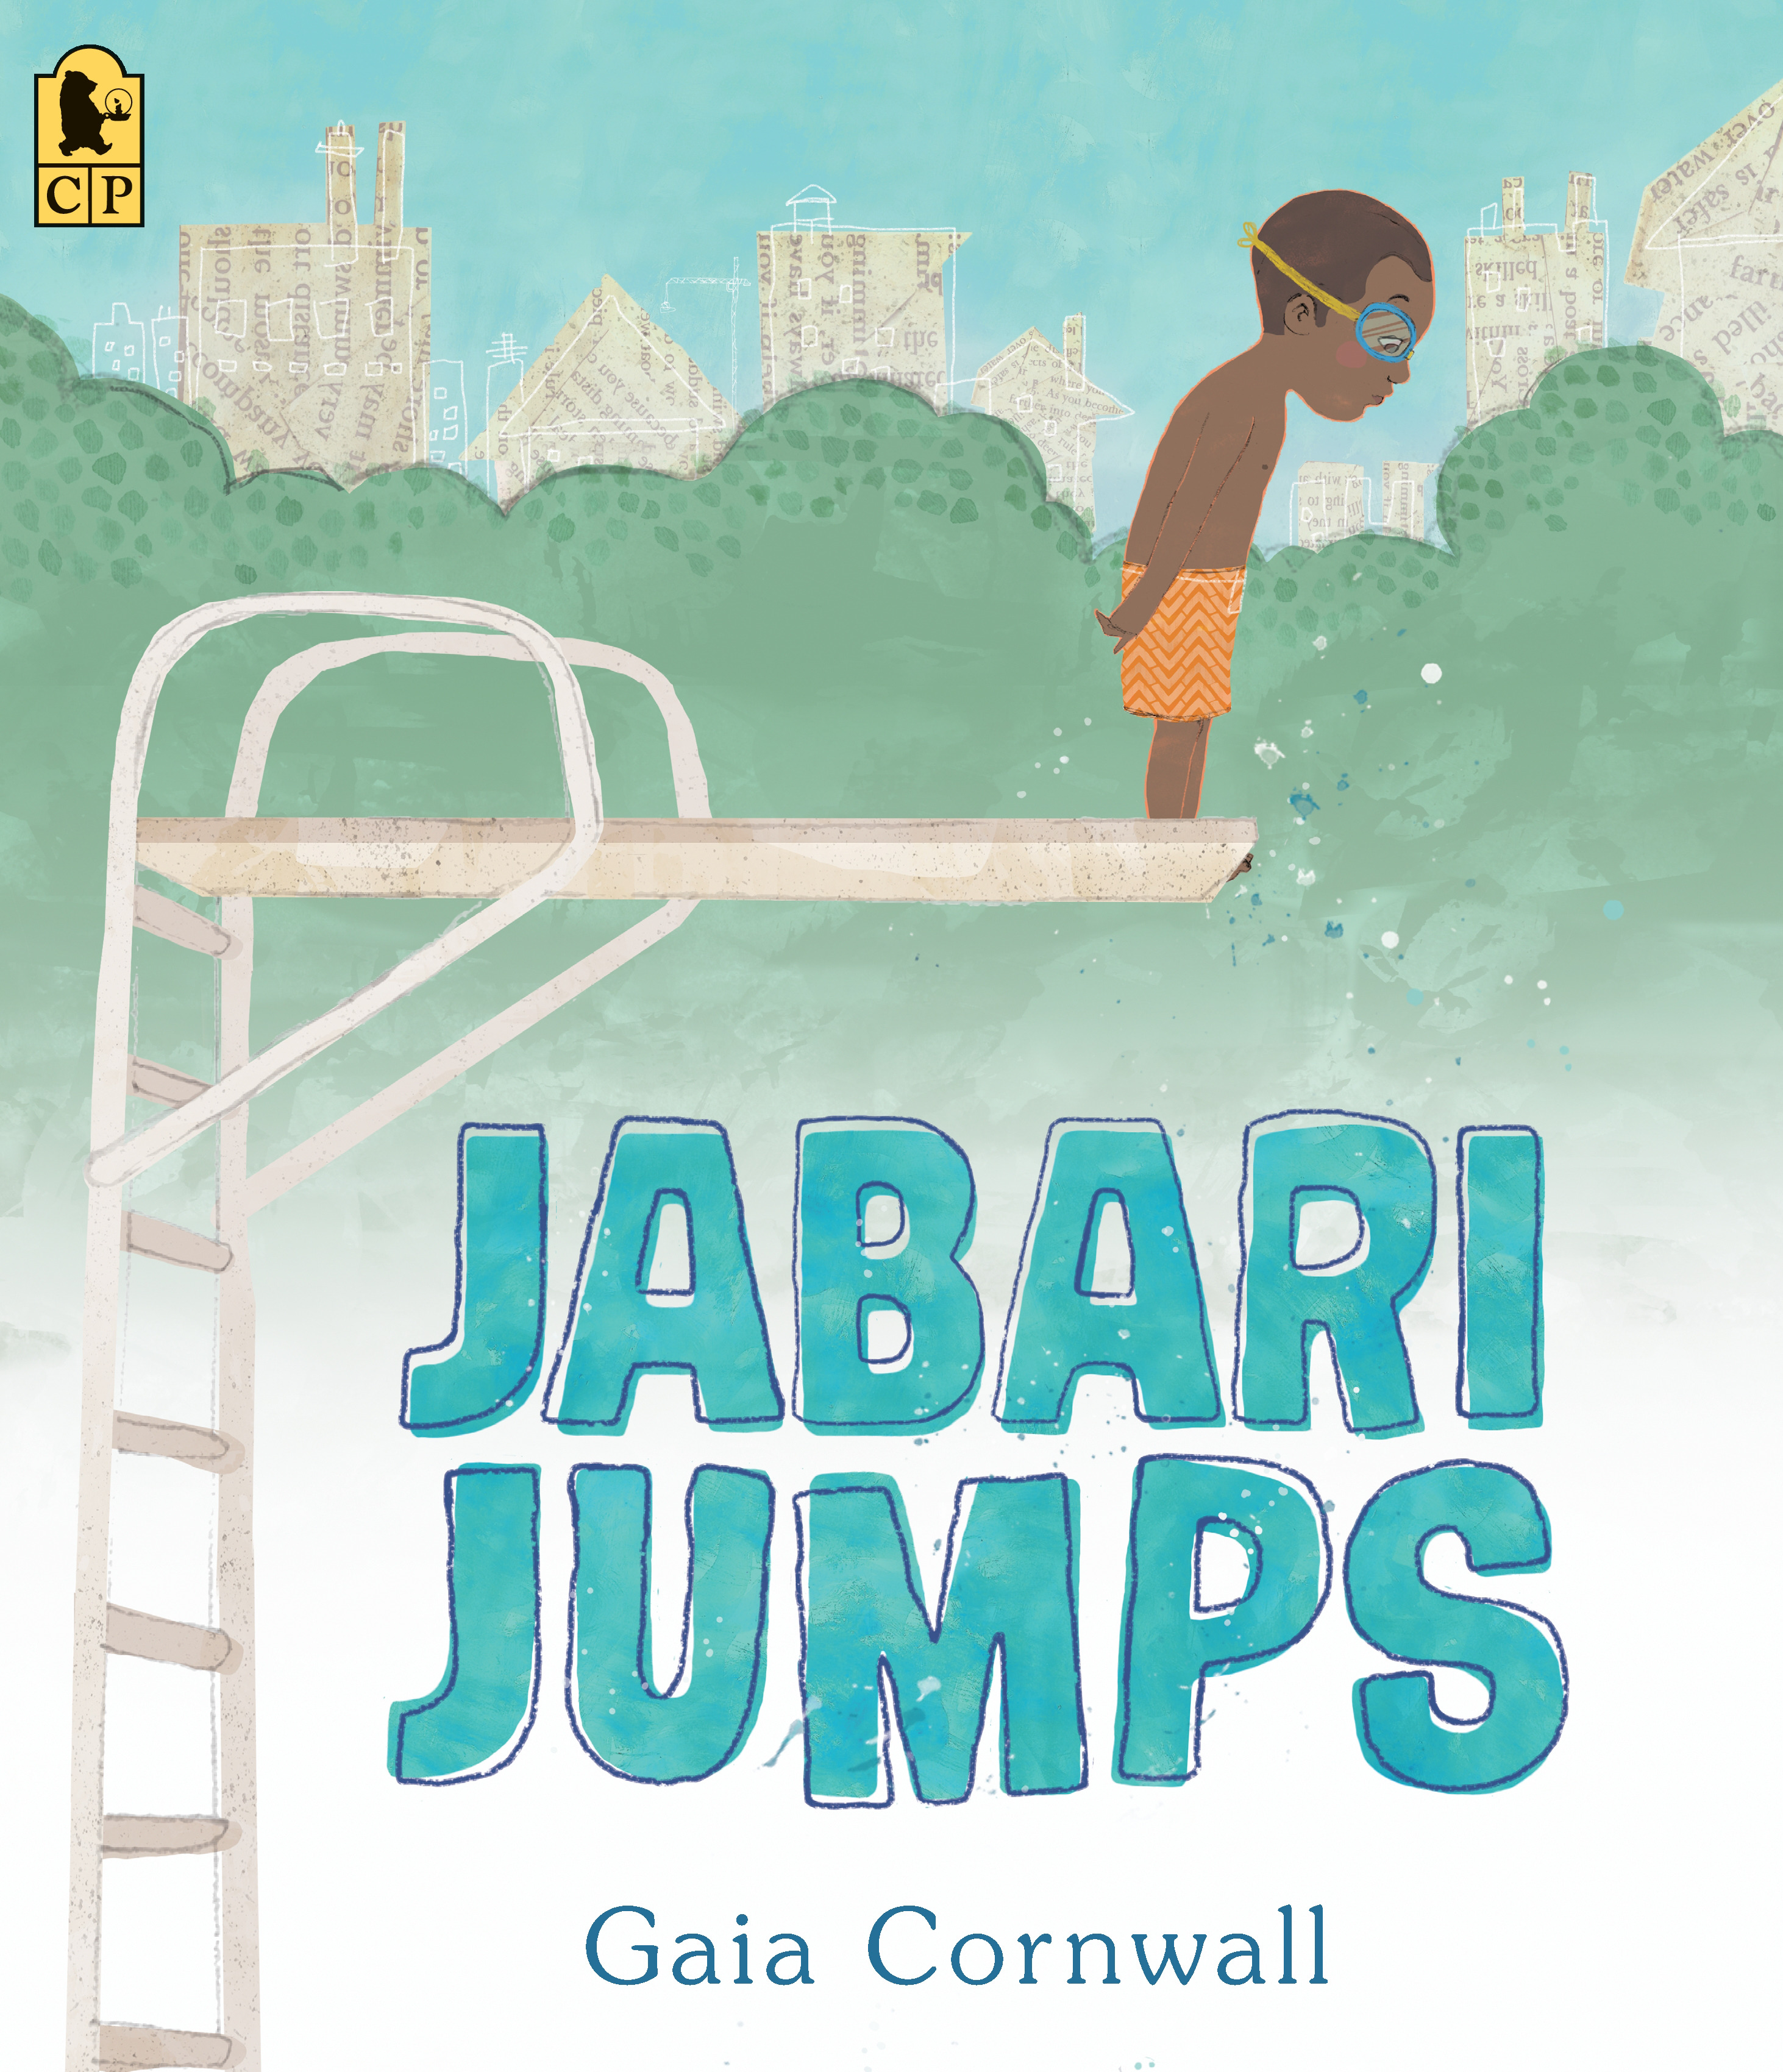 Jabari Jumps | Cornwall, Gaia